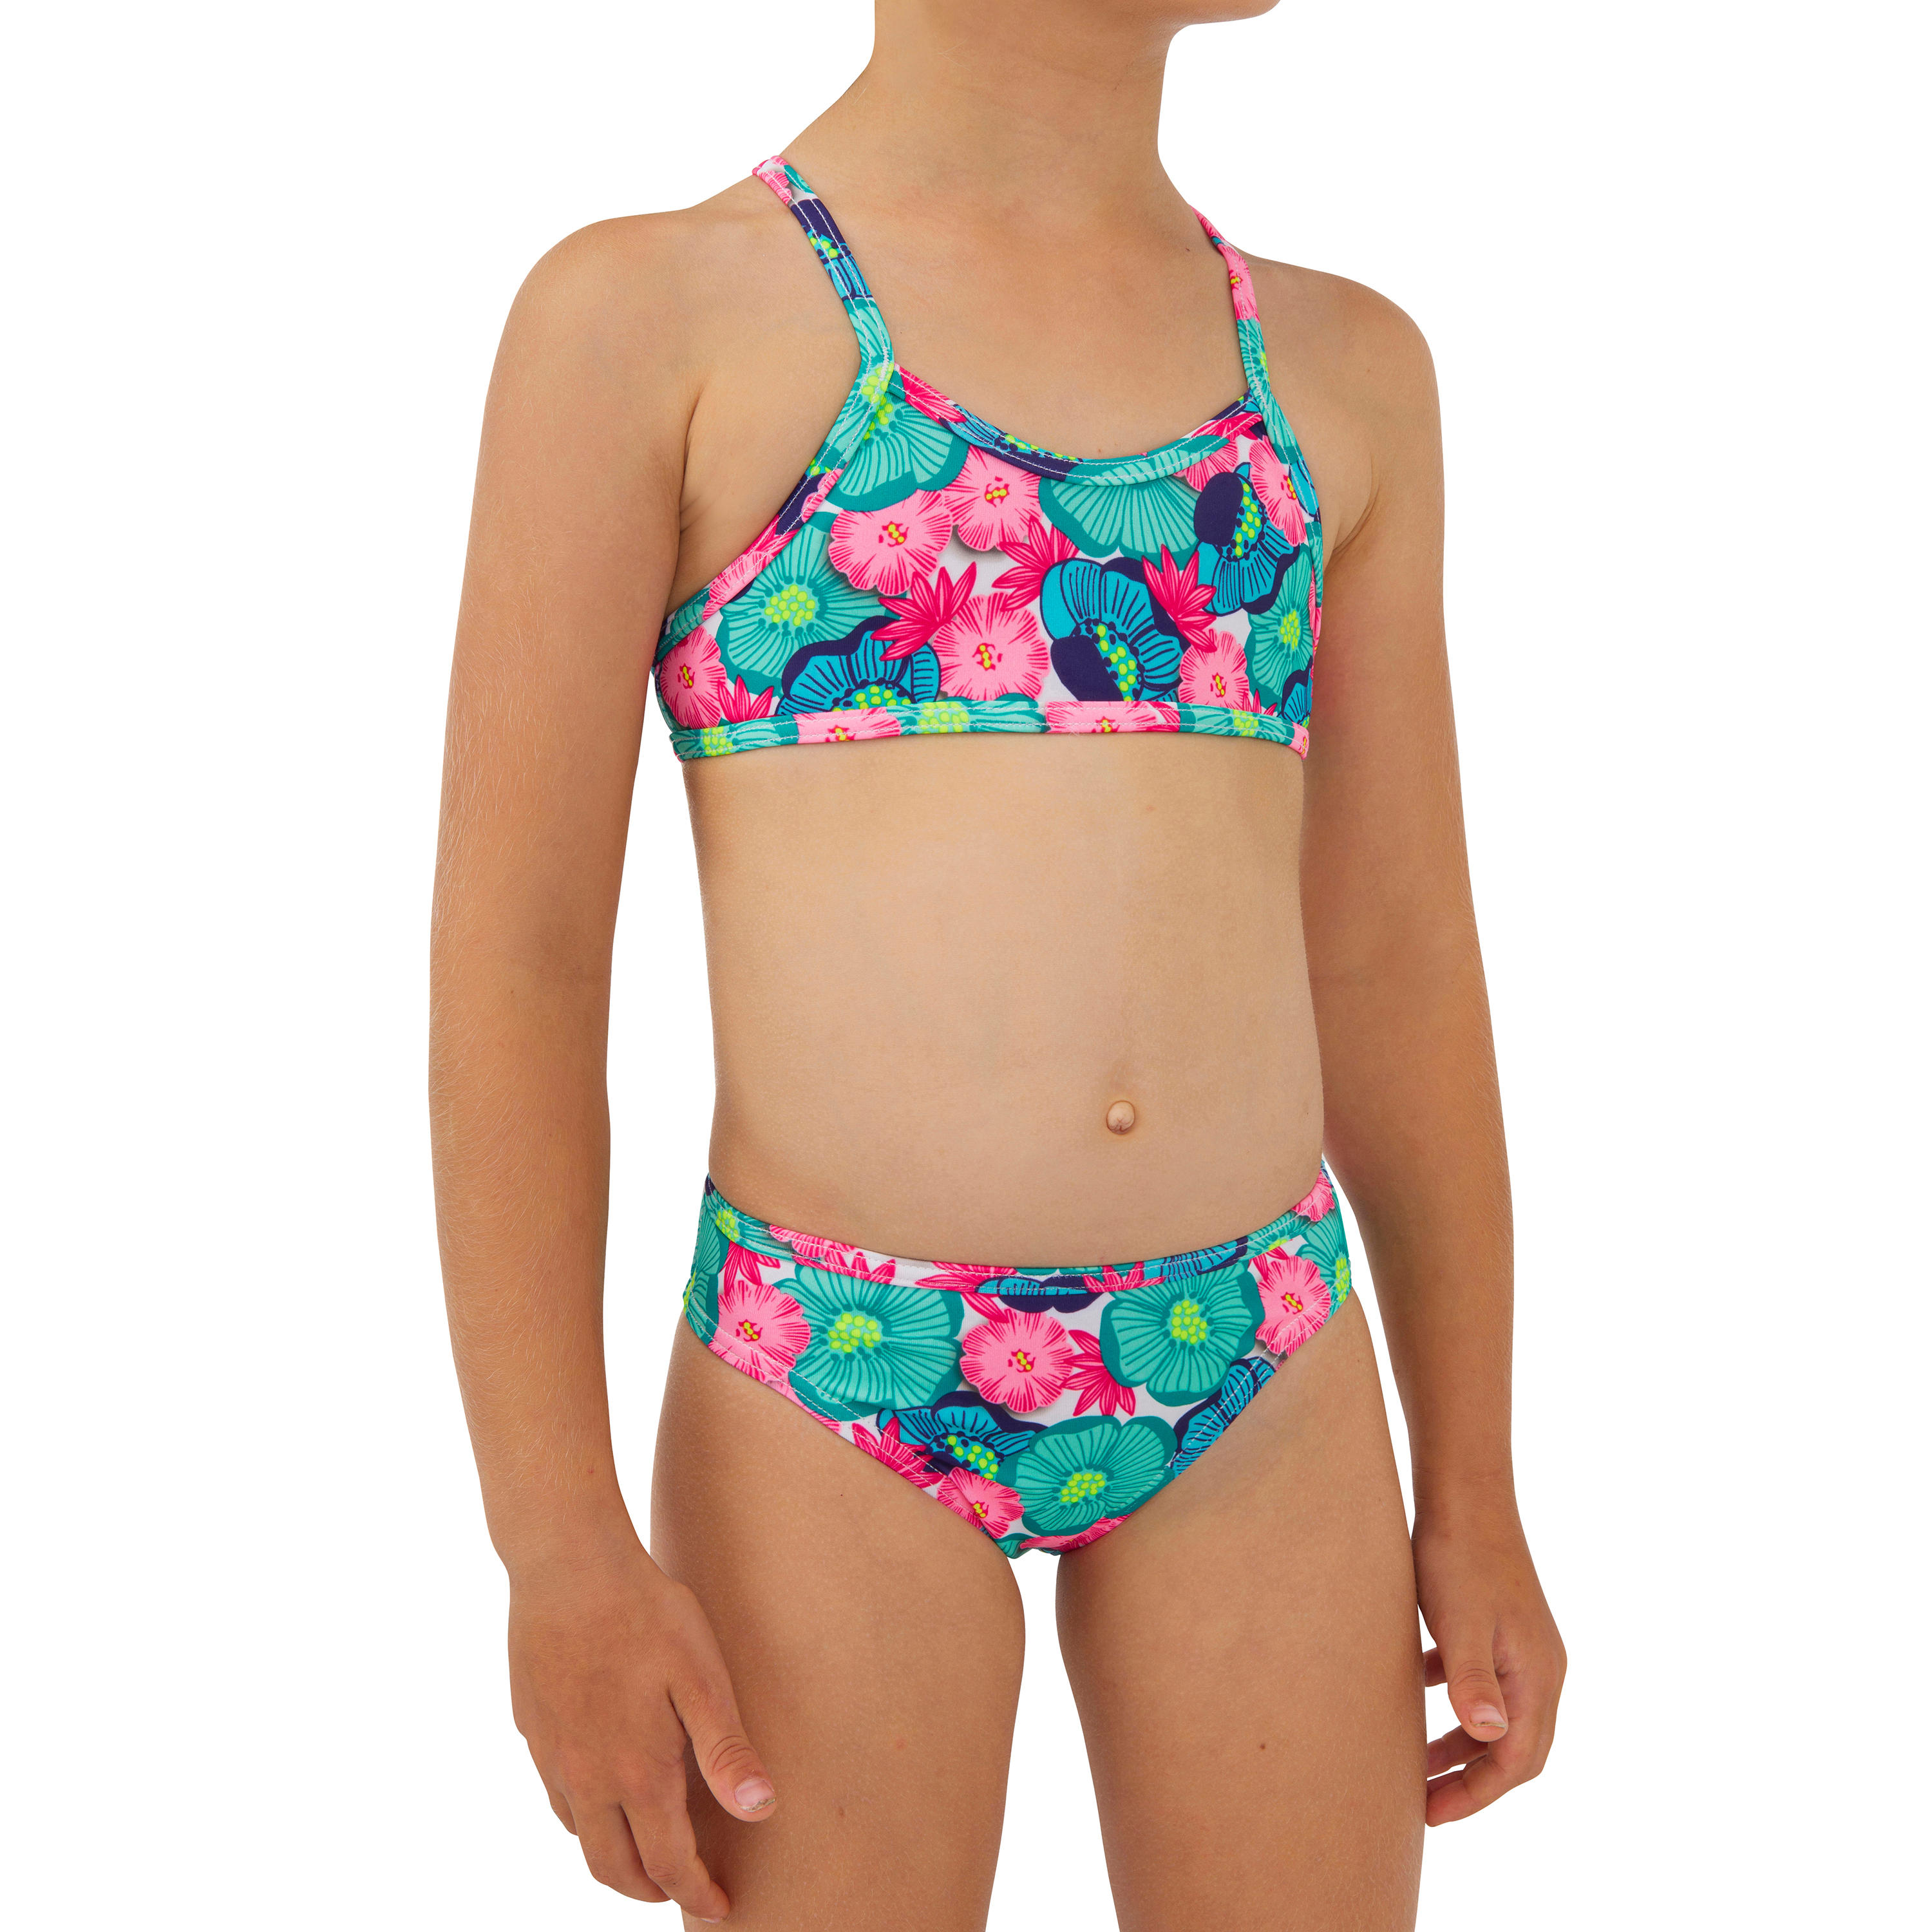 OLAIAN Bikini-Set Mädchen 100 Boni Naka grün/pink Gr. 116 - 6 Jahre